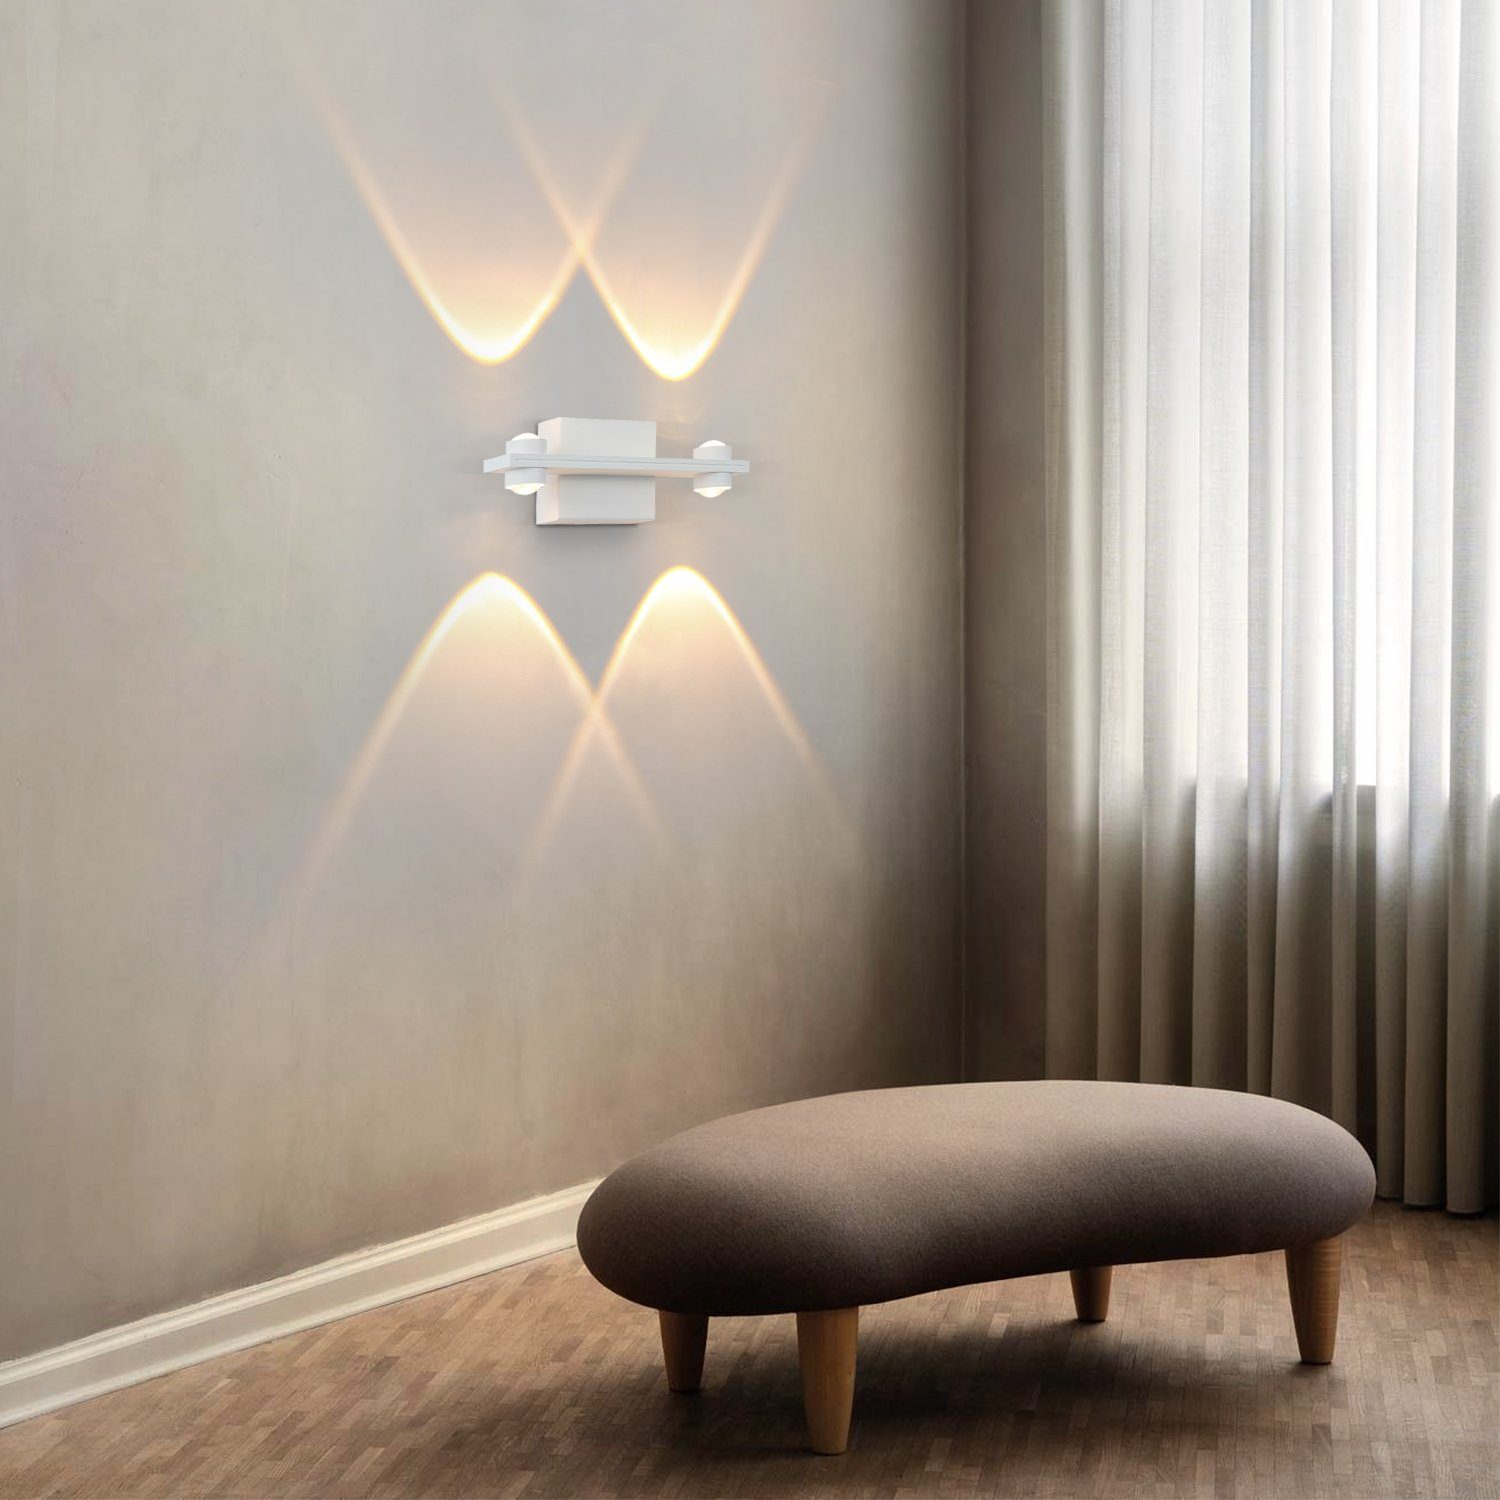 ZMH LED Wohnzimmer 3000K, Weiß innen Modern Warmweiss Wandlampe Wandbeleuchtung Wandleuchte